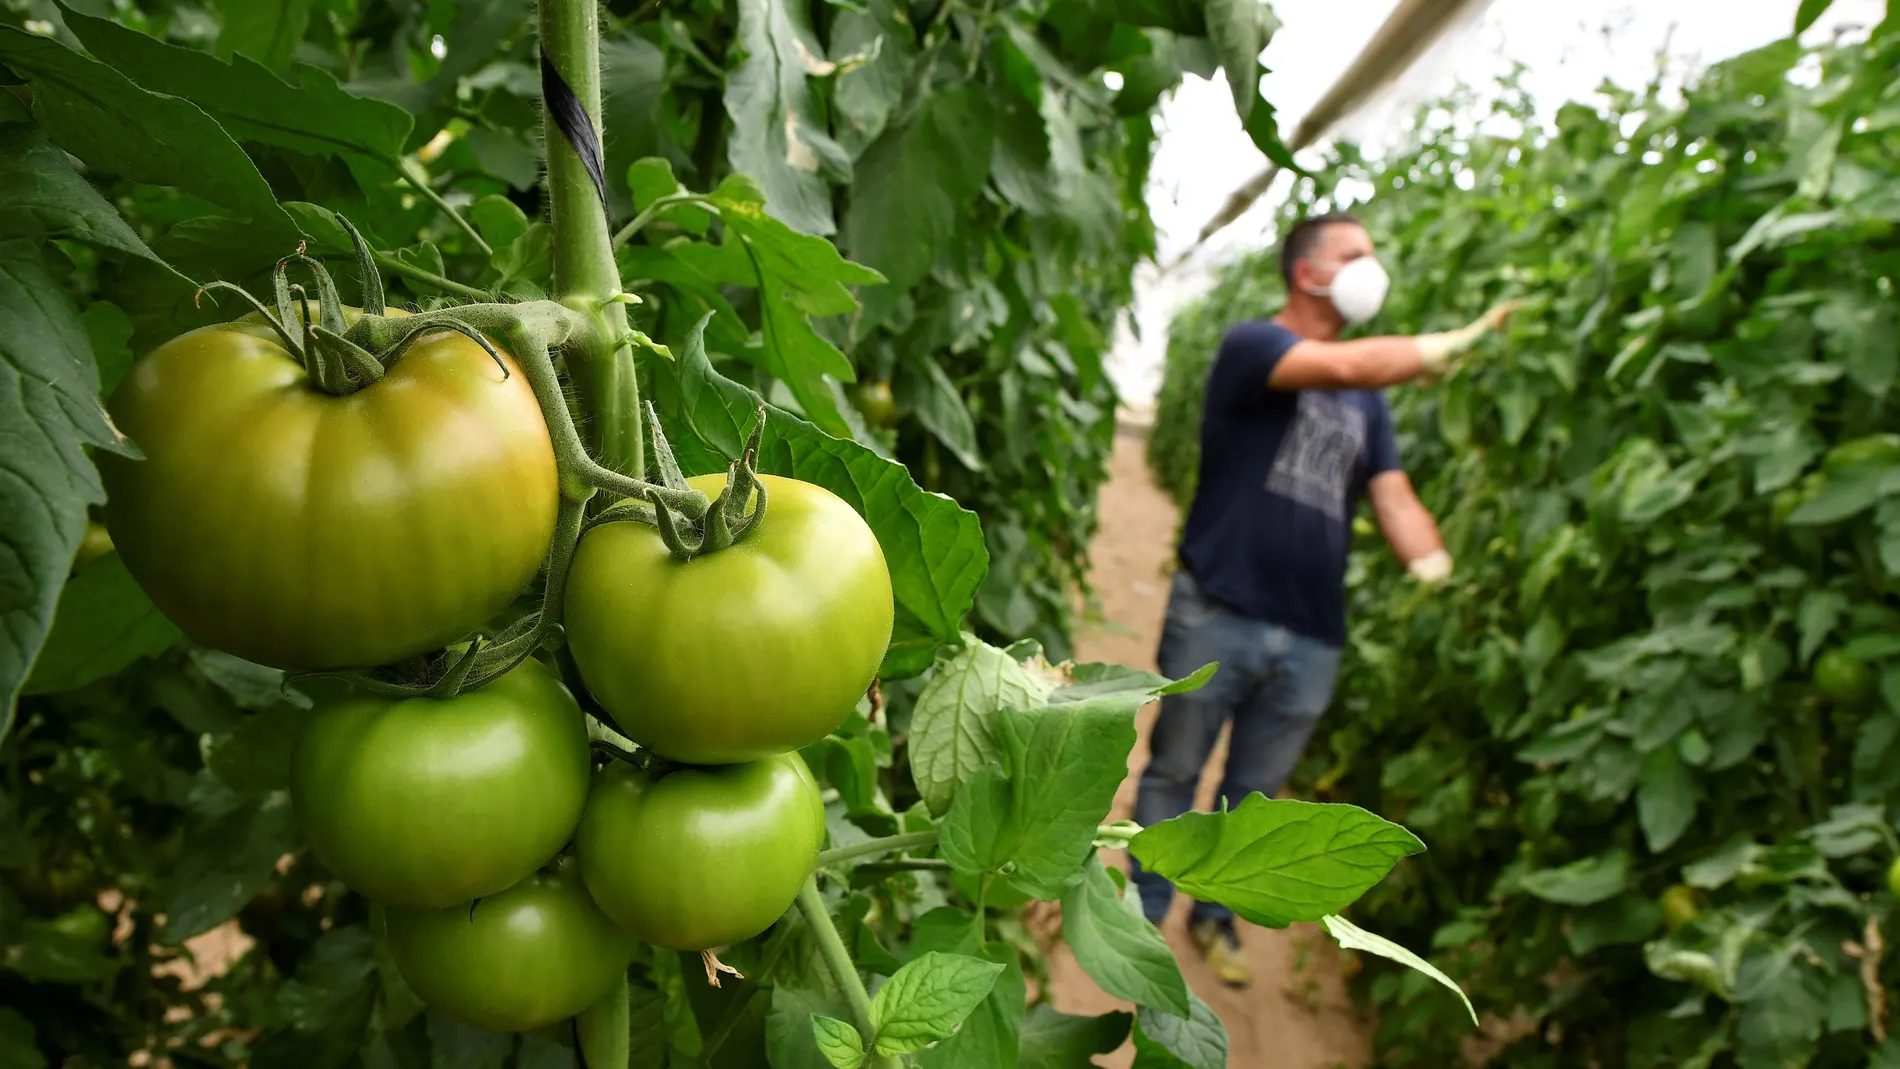 Guerra de insectos para un tomate más ecológico y saludable